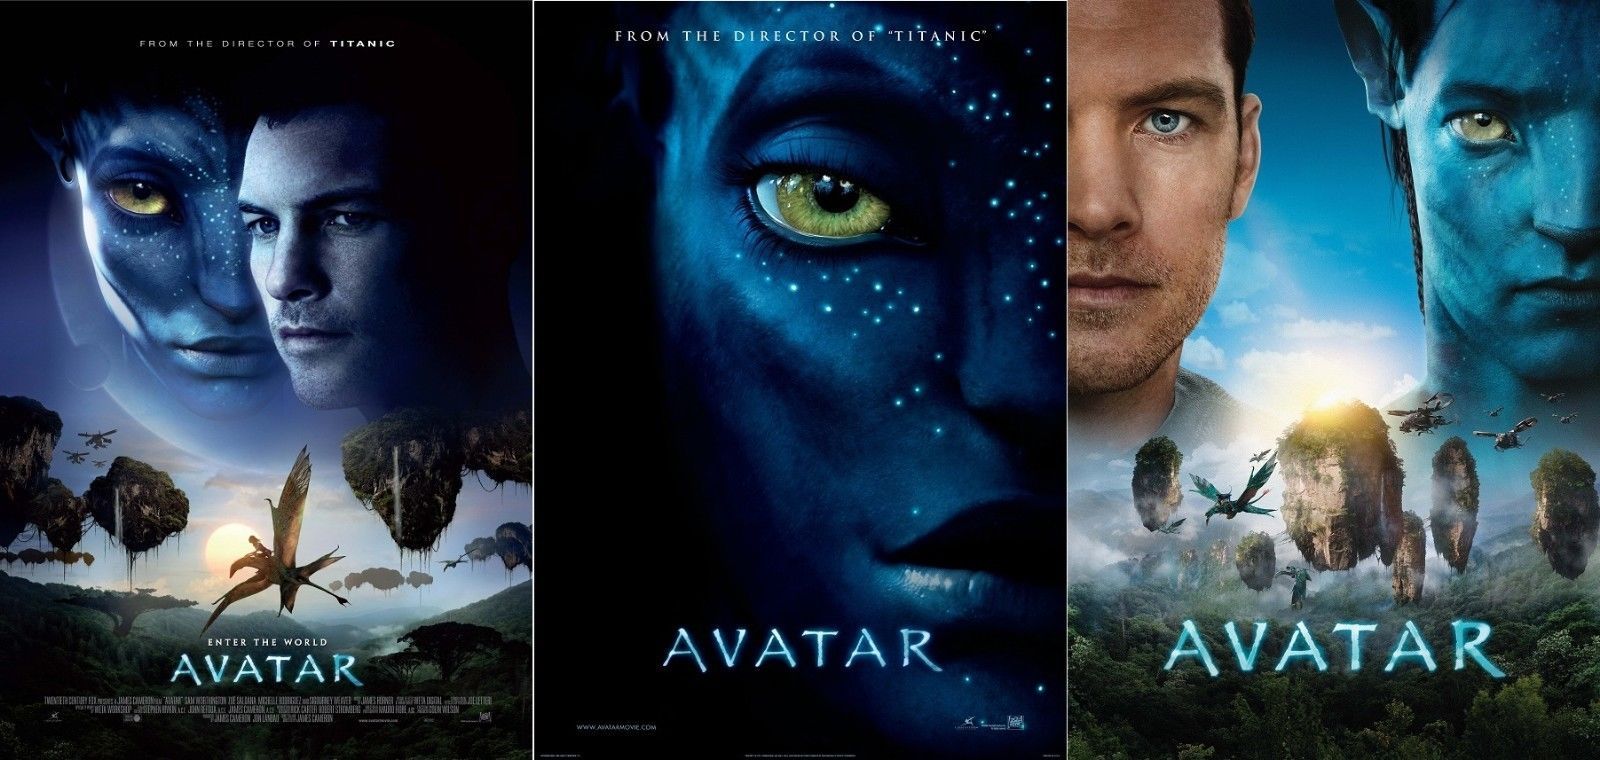 Avatar phần 3 được xem là bộ phim hoạt hình ăn khách nhất hiện nay. Với cốt truyện hấp dẫn, hình ảnh đẹp mắt và âm thanh chất lượng cao, bộ phim đang thu hút được sự quan tâm và yêu thích của rất nhiều khán giả.